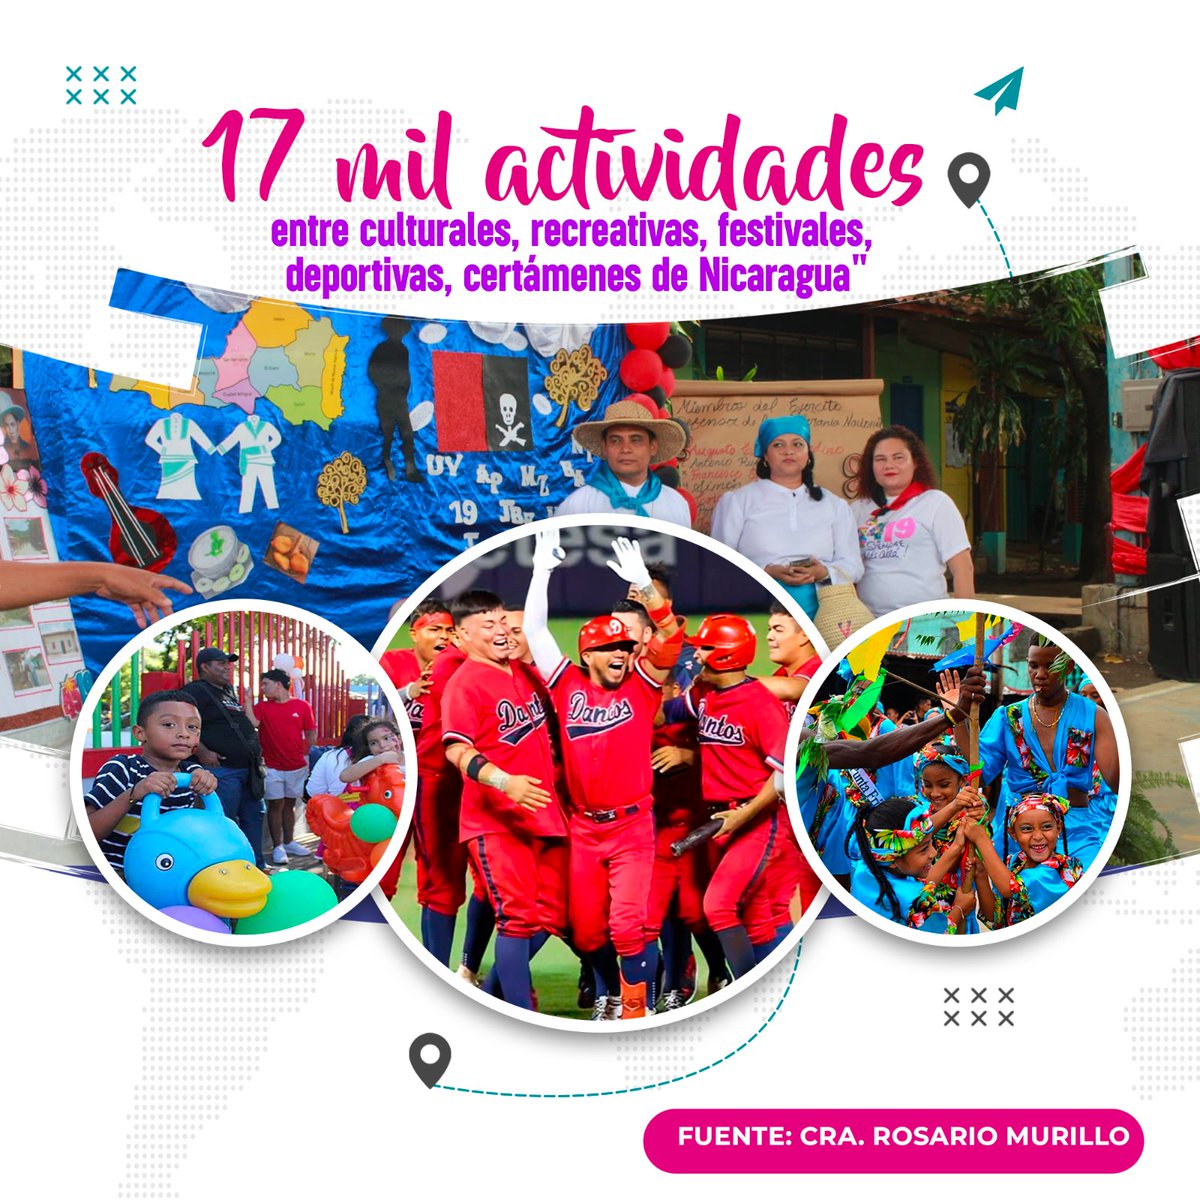 La Alegría De Vivir En Paz...
17 Mil Actividades Por Toda La Nación...
#Nicaragua #SoberaníaYDignidadNacional #4519LaPatriaLaRevolución #ManaguaSandinista #SomosUNCSM